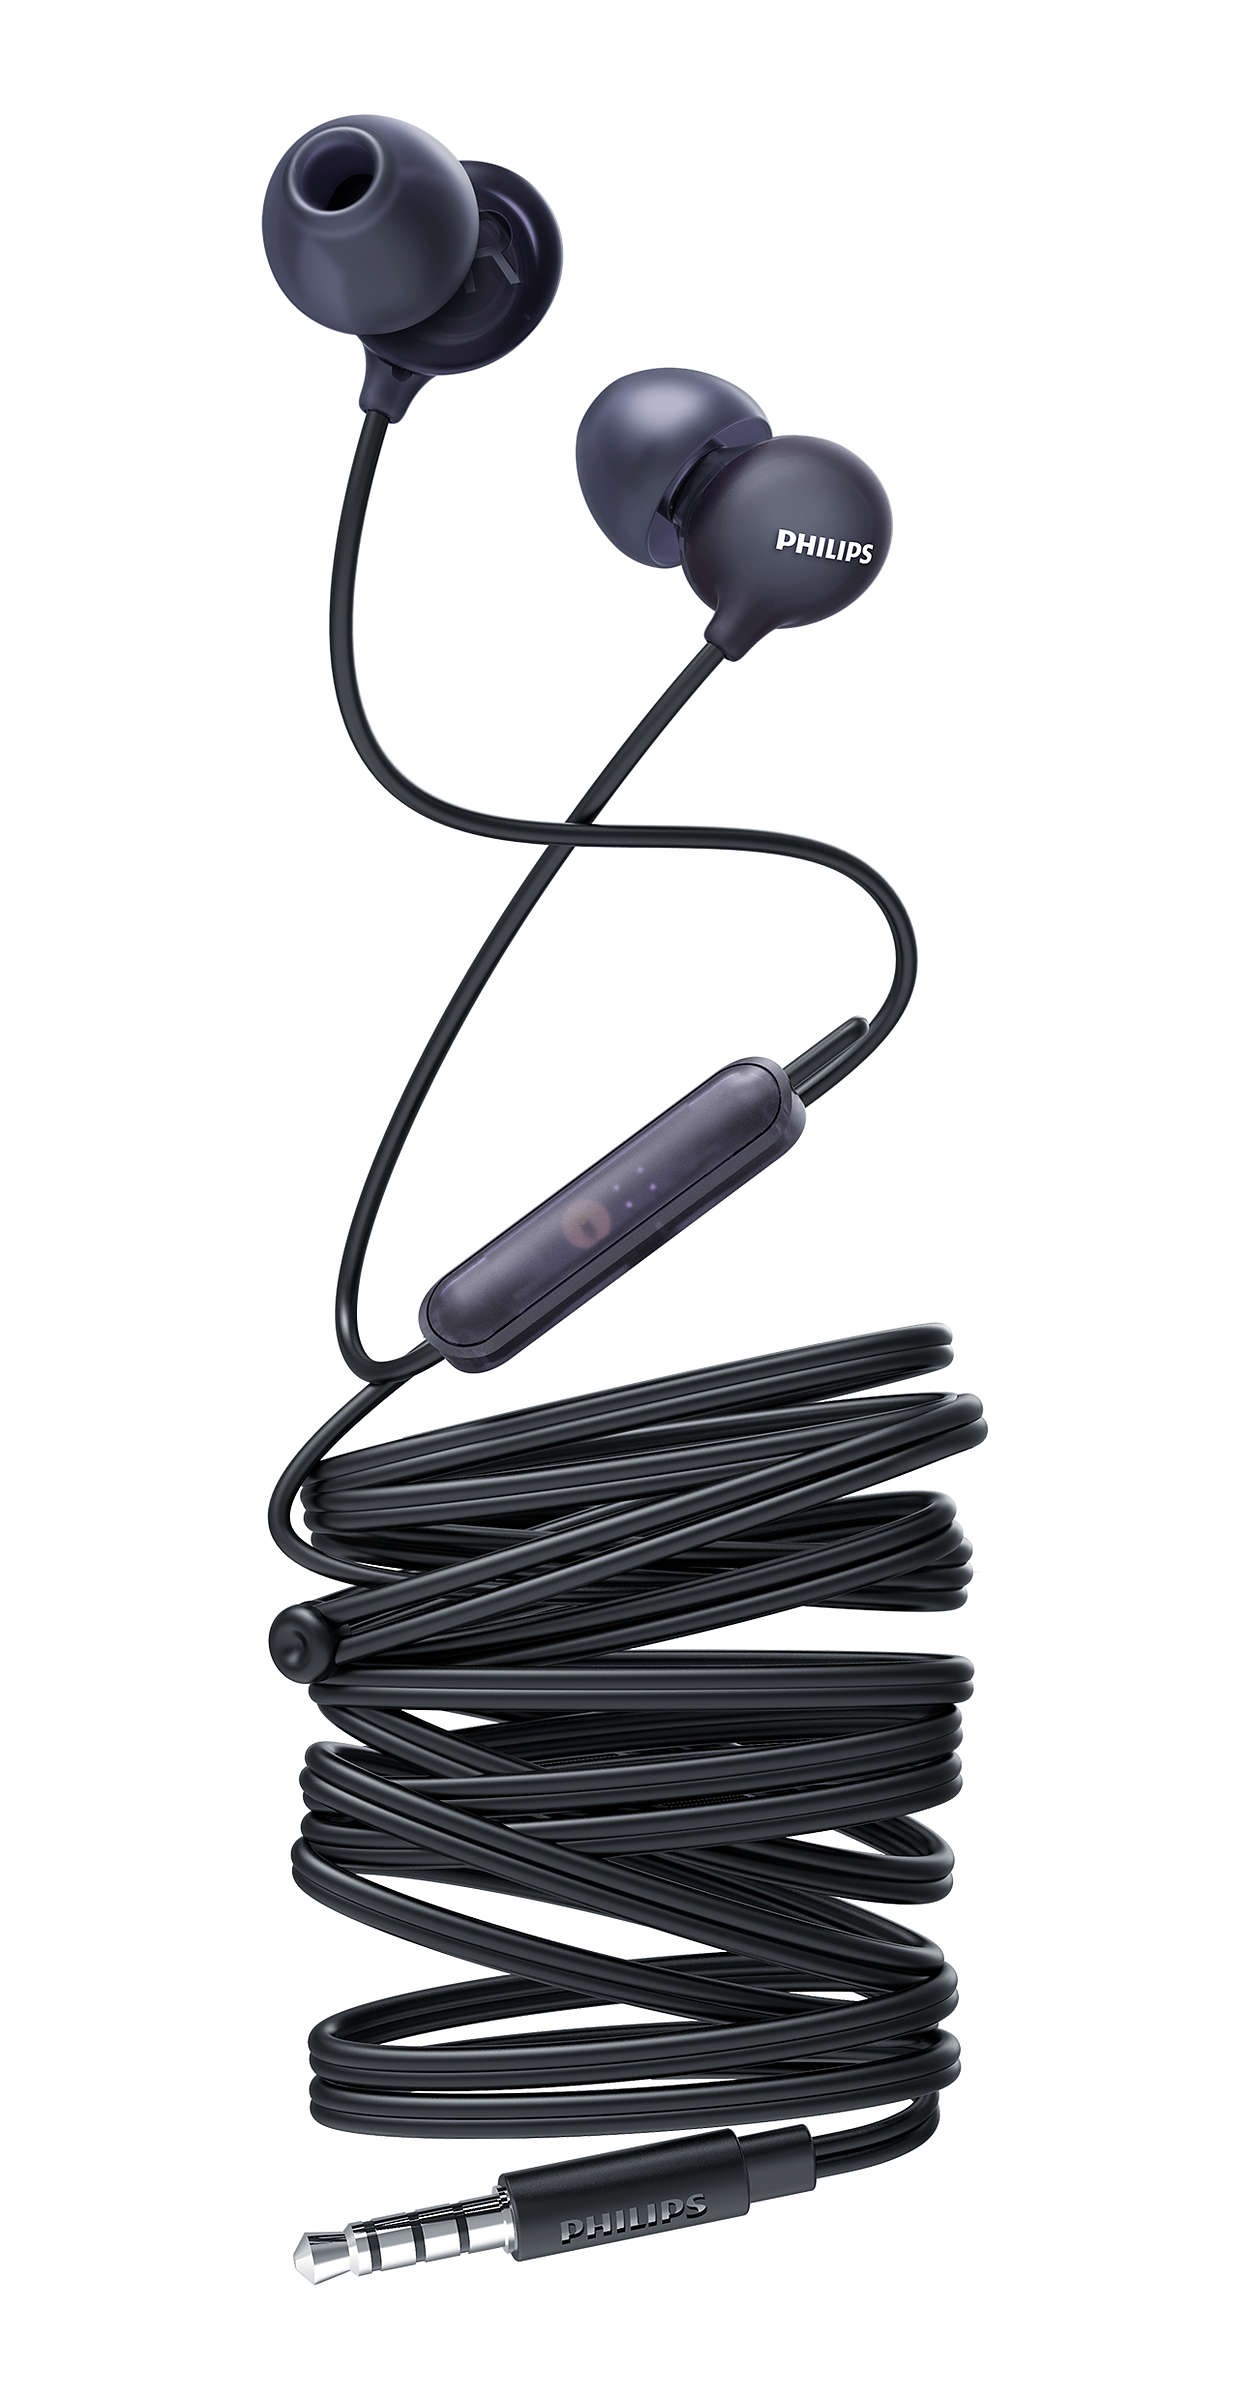 Casti audio intraauriculare cu fir, philips, microfon incorporat, difuzoare 8.6 mm, lungime cablu 12 cm, izolare sunet, design ergonomic, negru